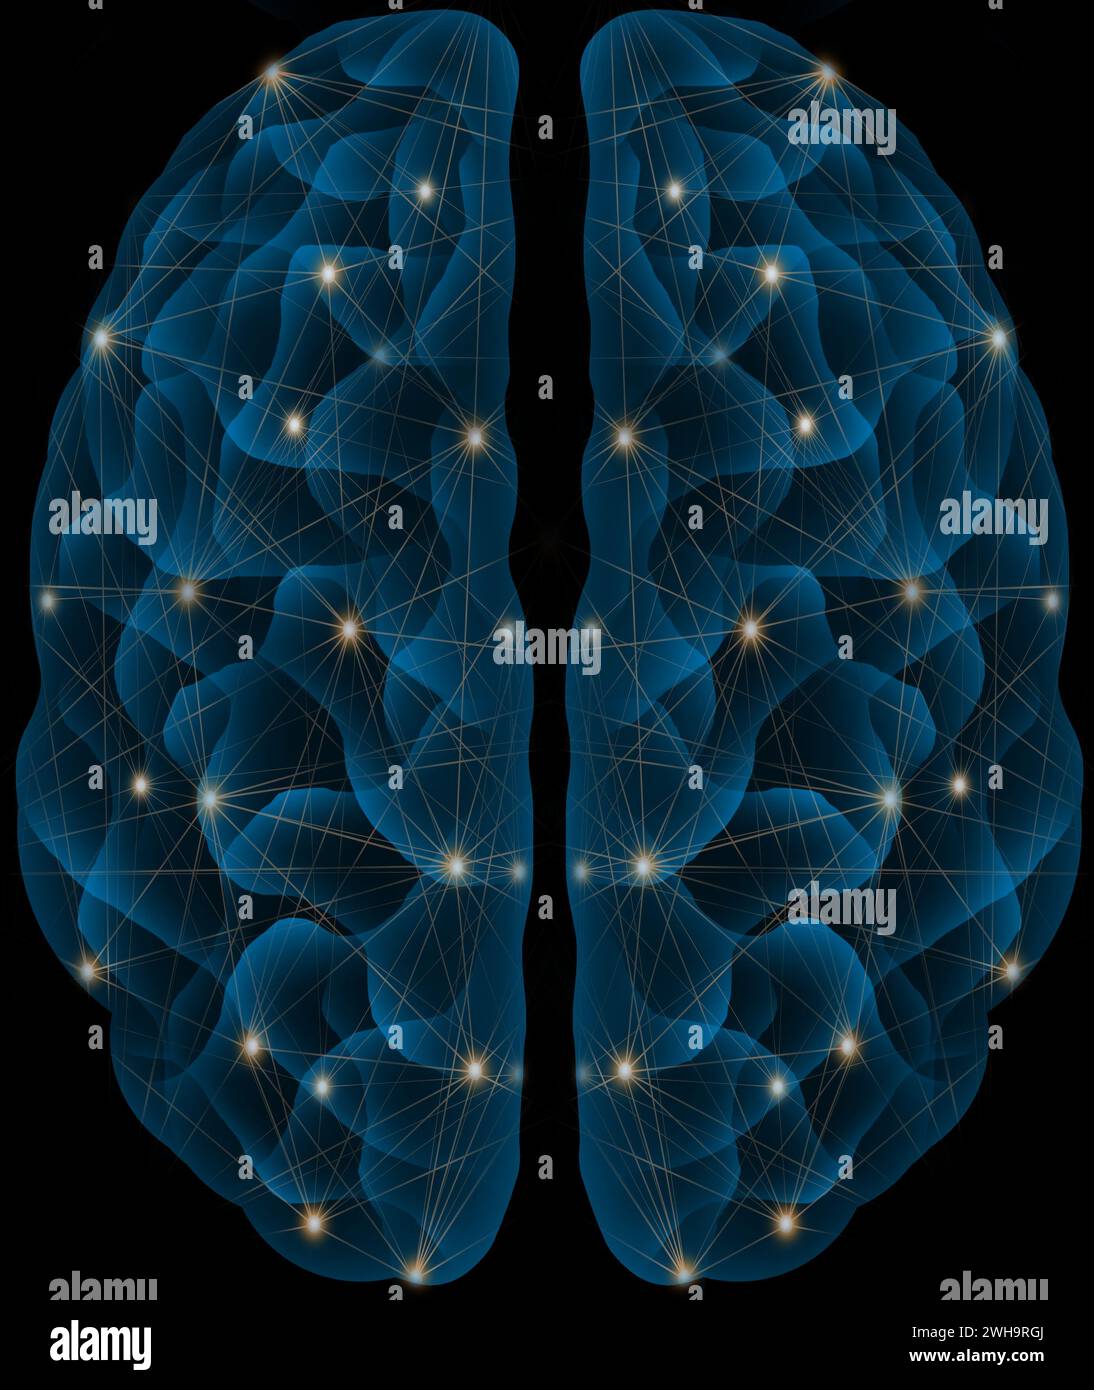 Menschliches Gehirn mit blau leuchtendem futuristischem neuronalen Netzbild Stockfoto